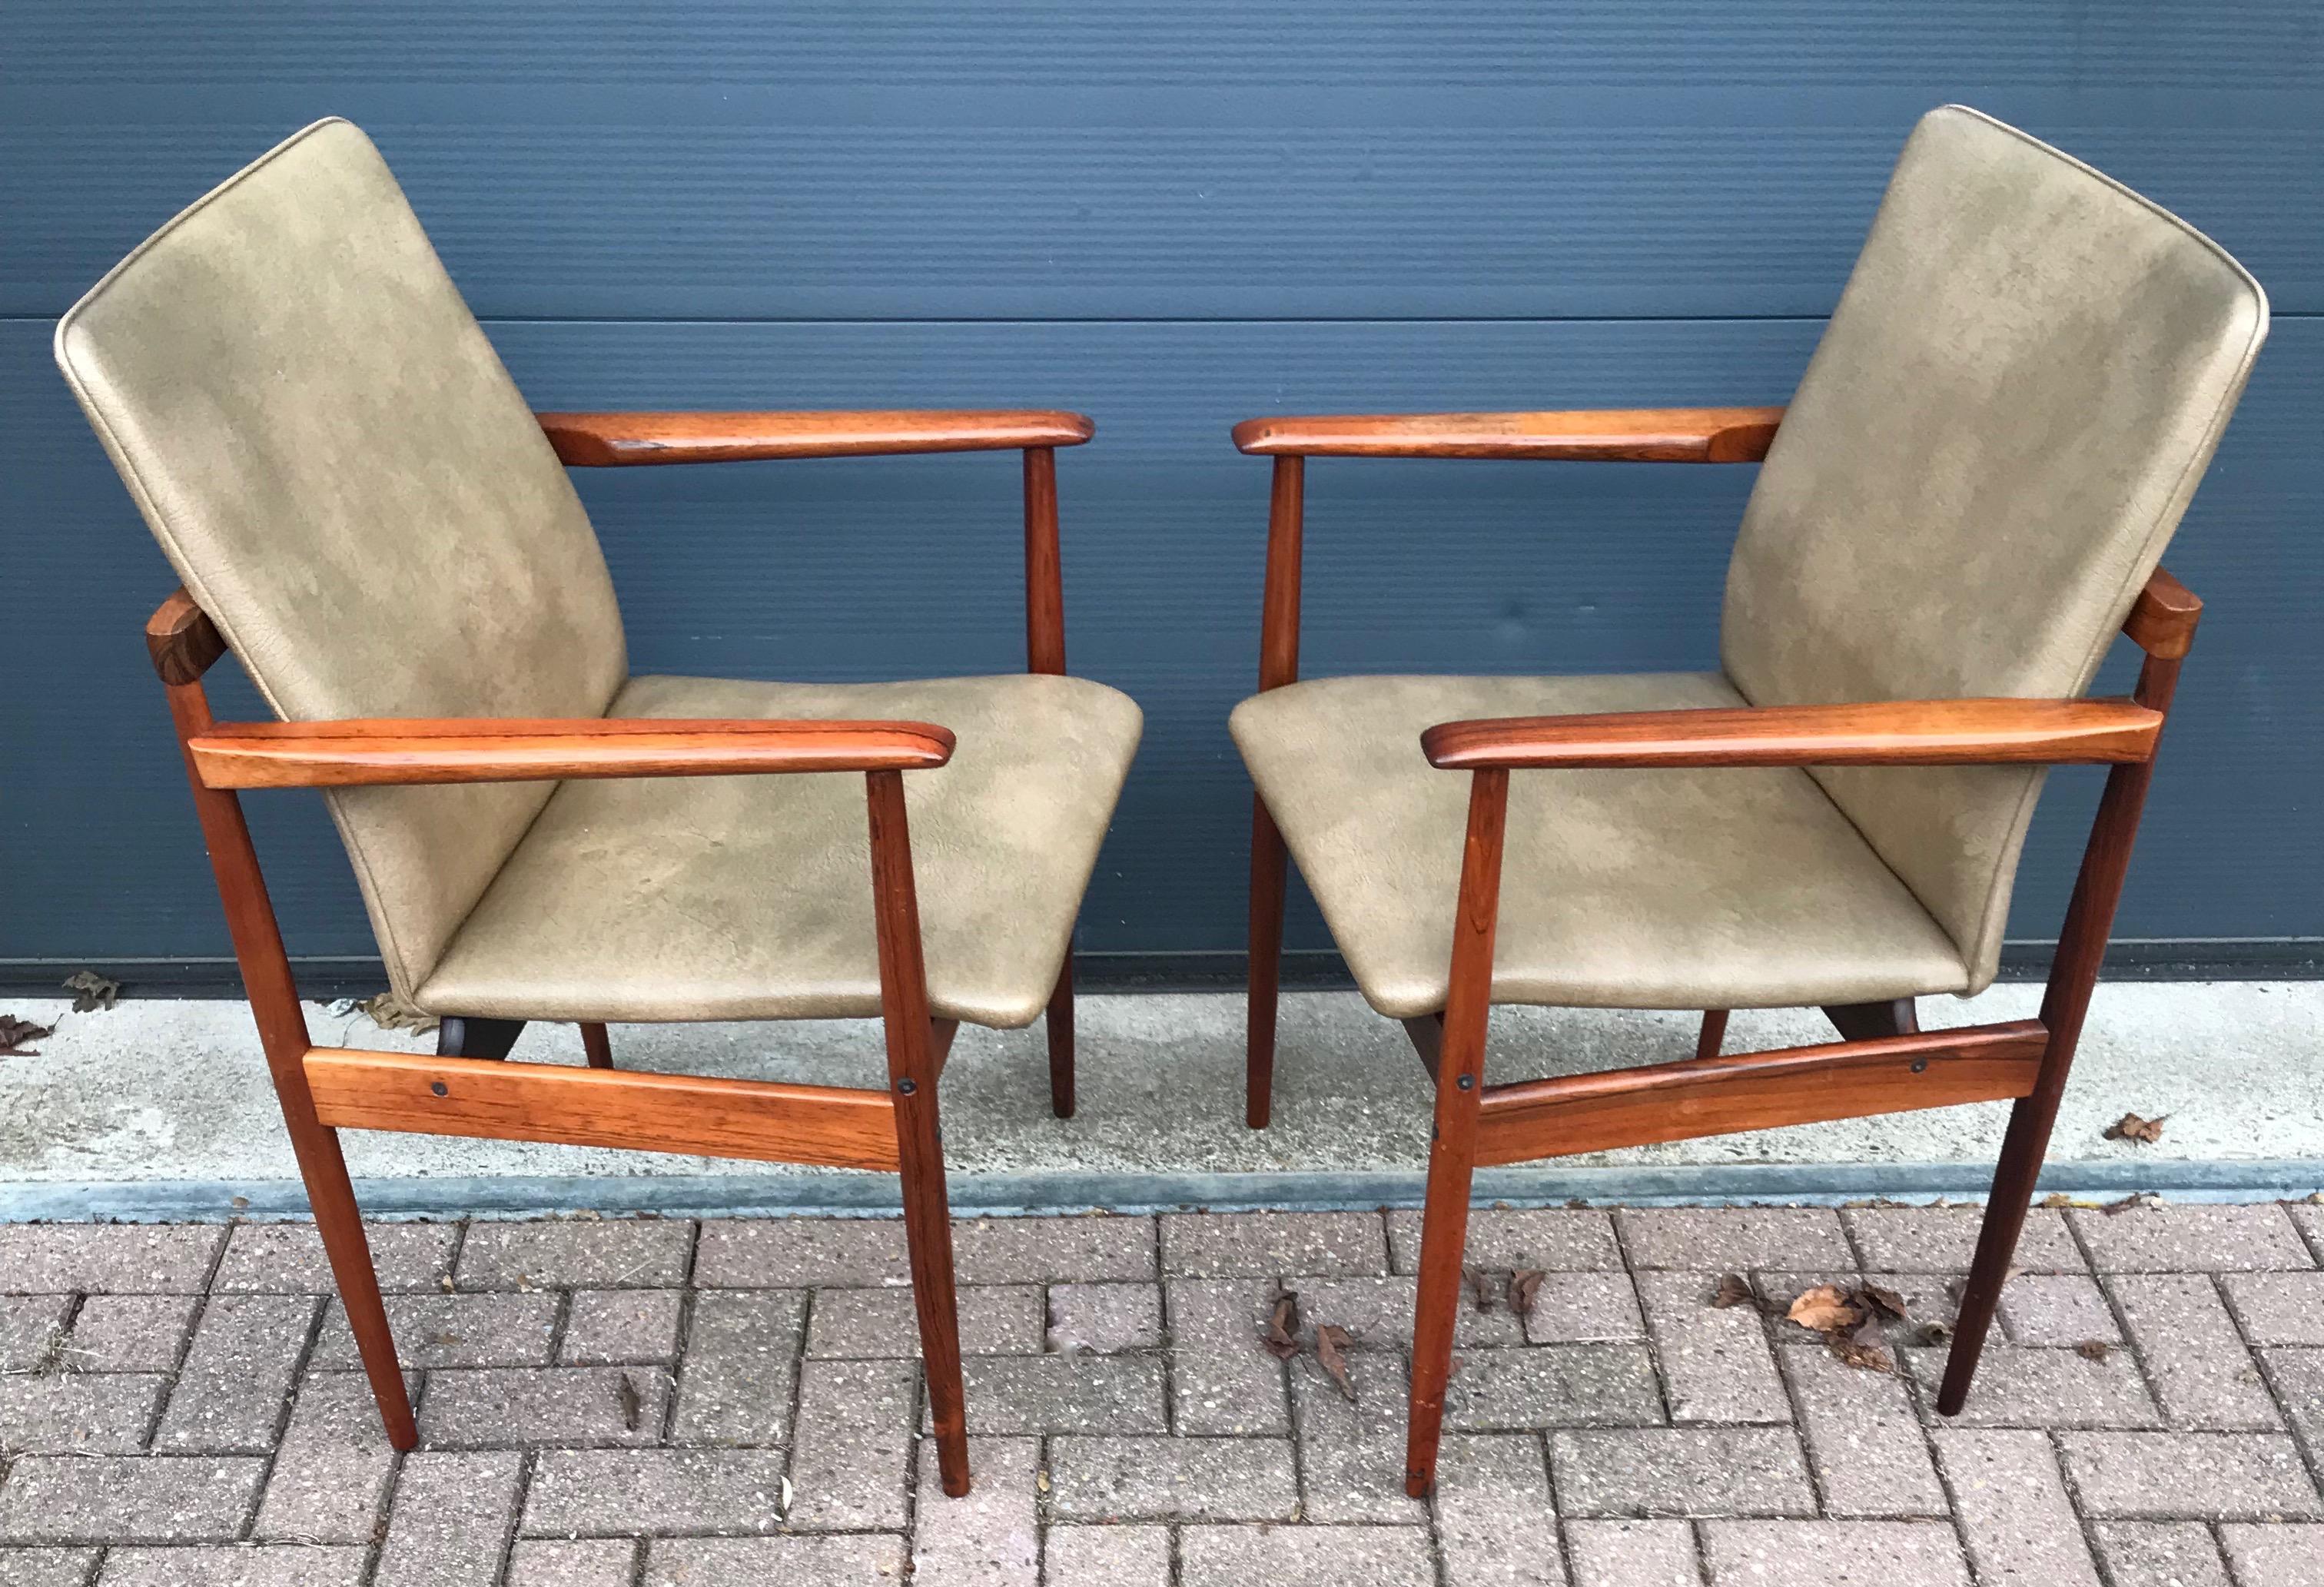 Un design magnifique et des chaises en excellent état.

Le design et l'aspect de ces chaises rares m'ont rappelé ce que quelqu'un m'a appris un jour à propos des bonnes sculptures : 